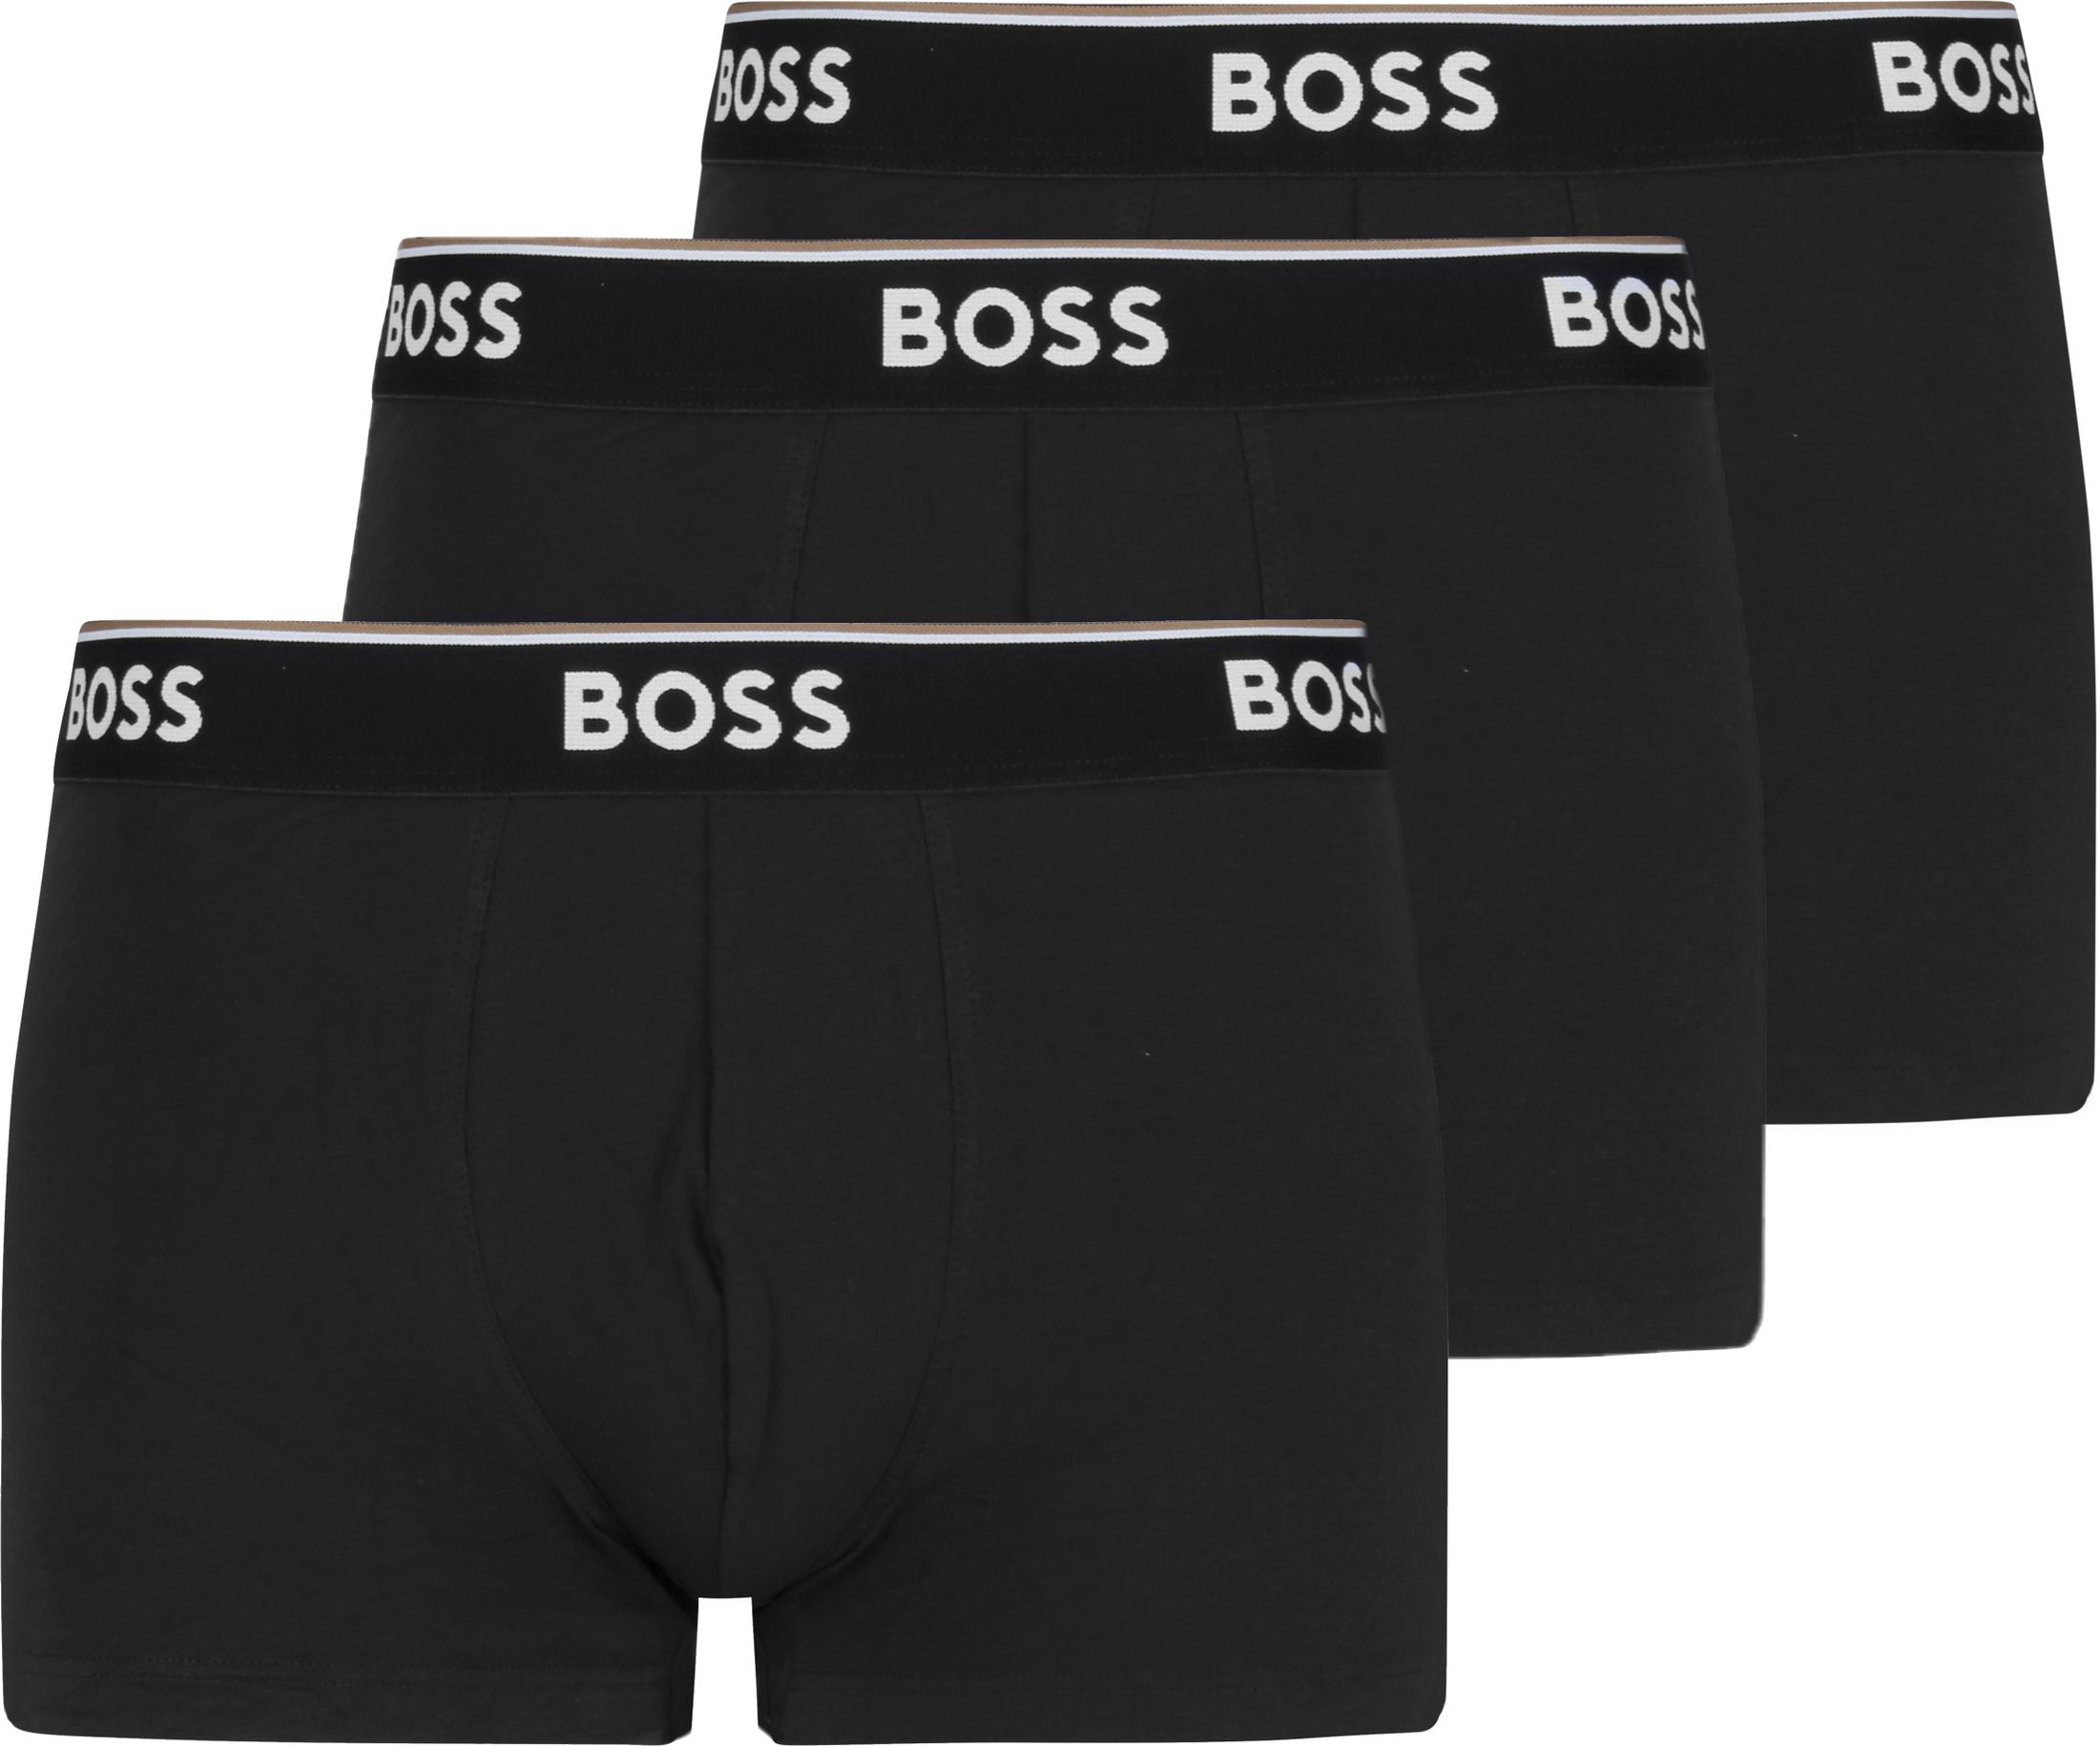 Hugo Boss Short Boxer Shorts Power 3-Pack 001 Black size M